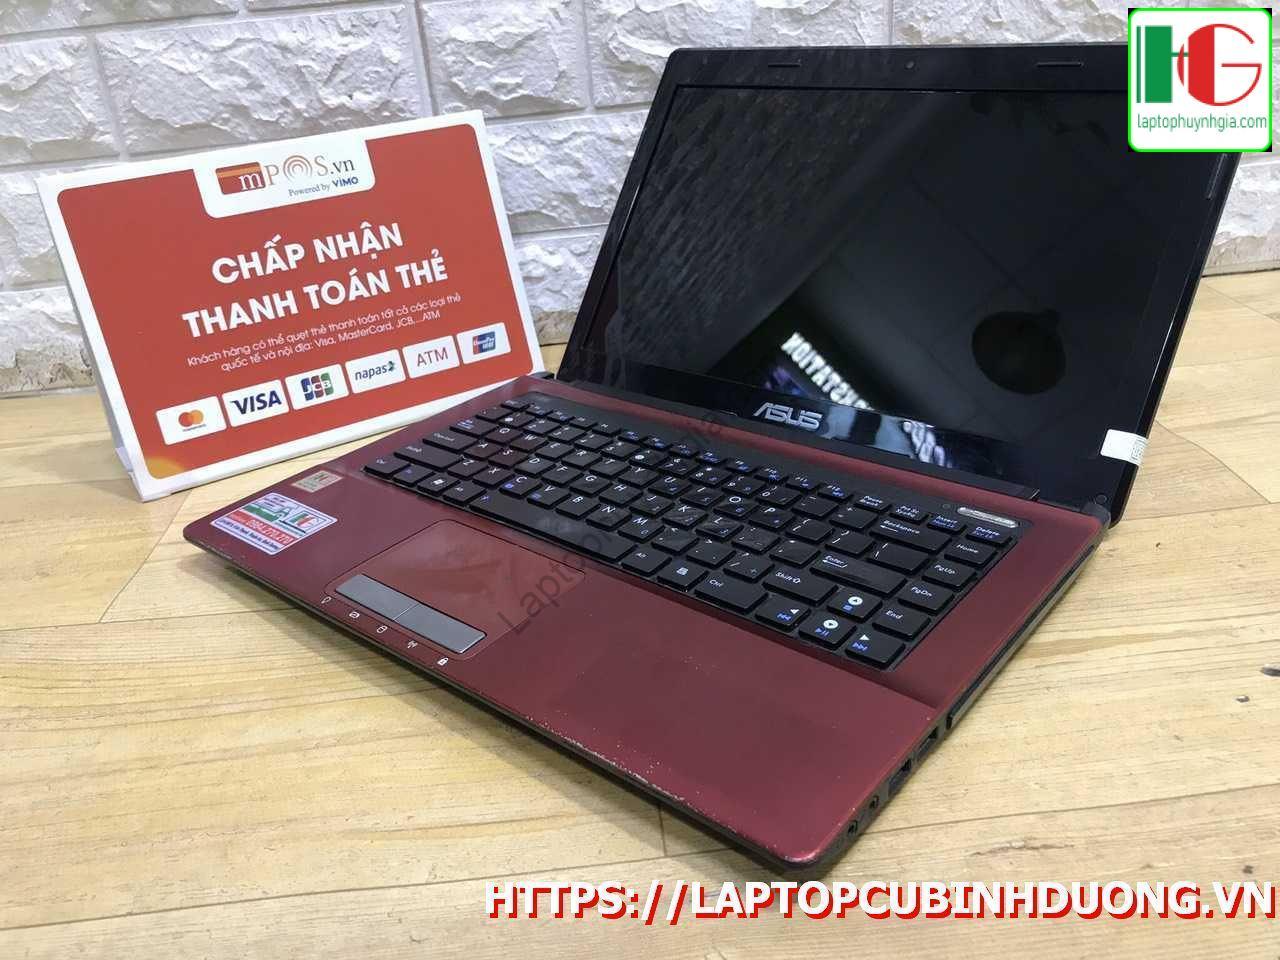 Laptop Asus K43j I3 2310m 3g 500g Laptopcubinhduong.vn [kích Thước Gốc] Result